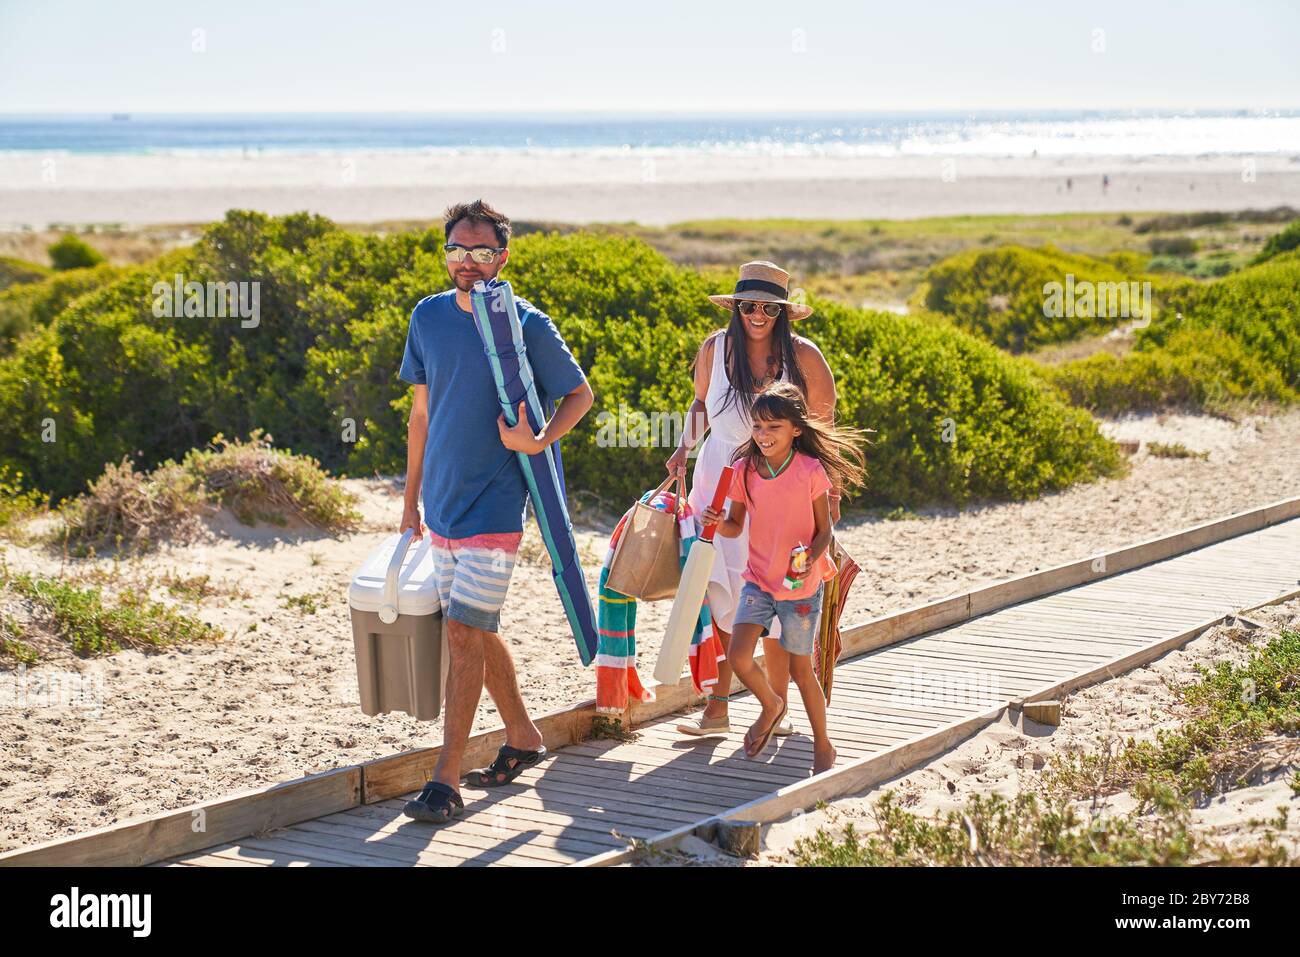 Happy family walking on sunny beach boardwalk Stock Photo